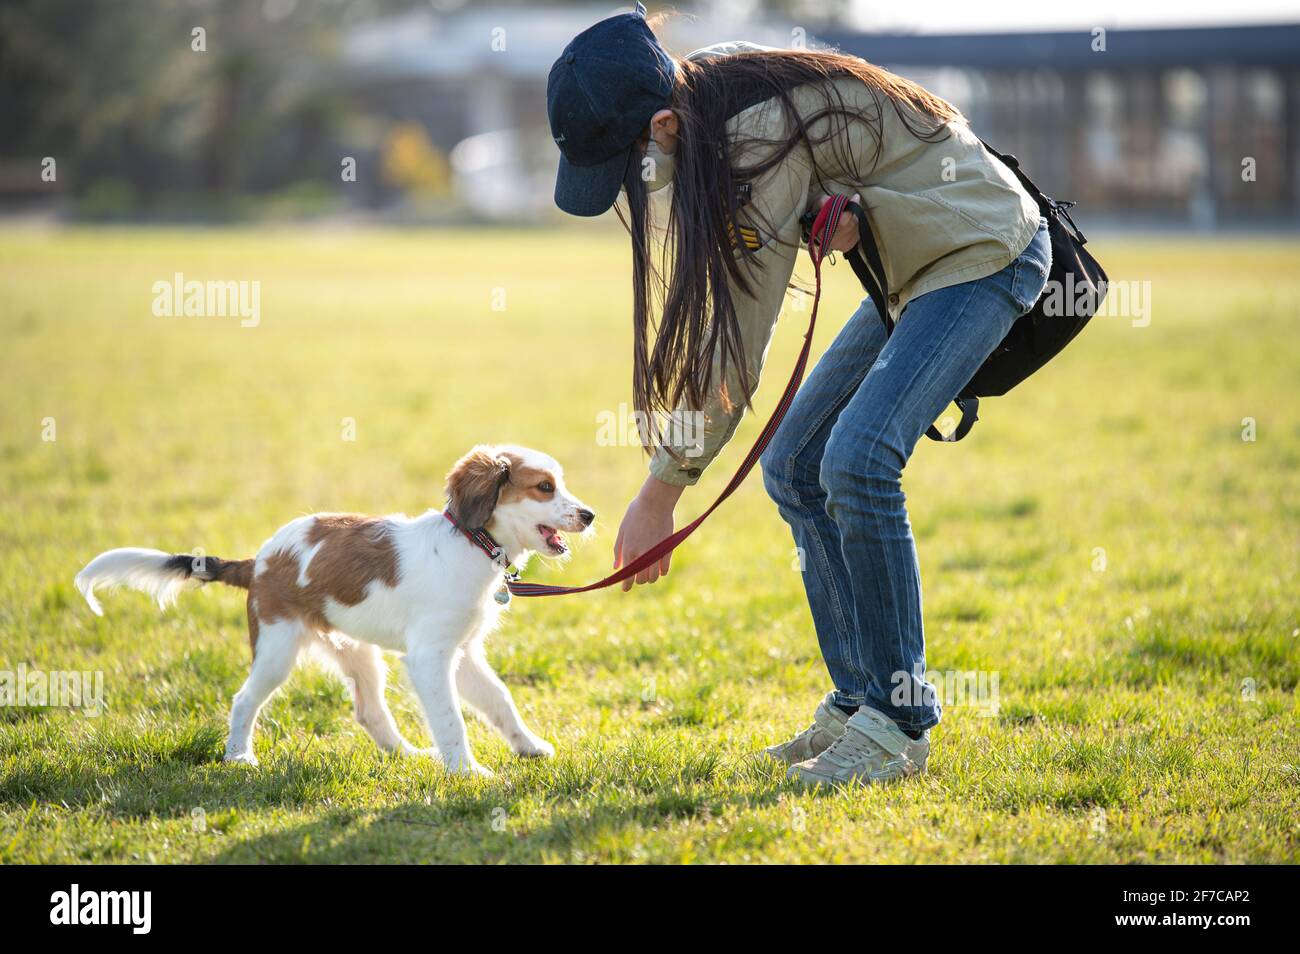 Junges Mädchen mit einer Gesichtsmaske, die im Park mit ihrem Hund spielt. Frühling. Stockfoto